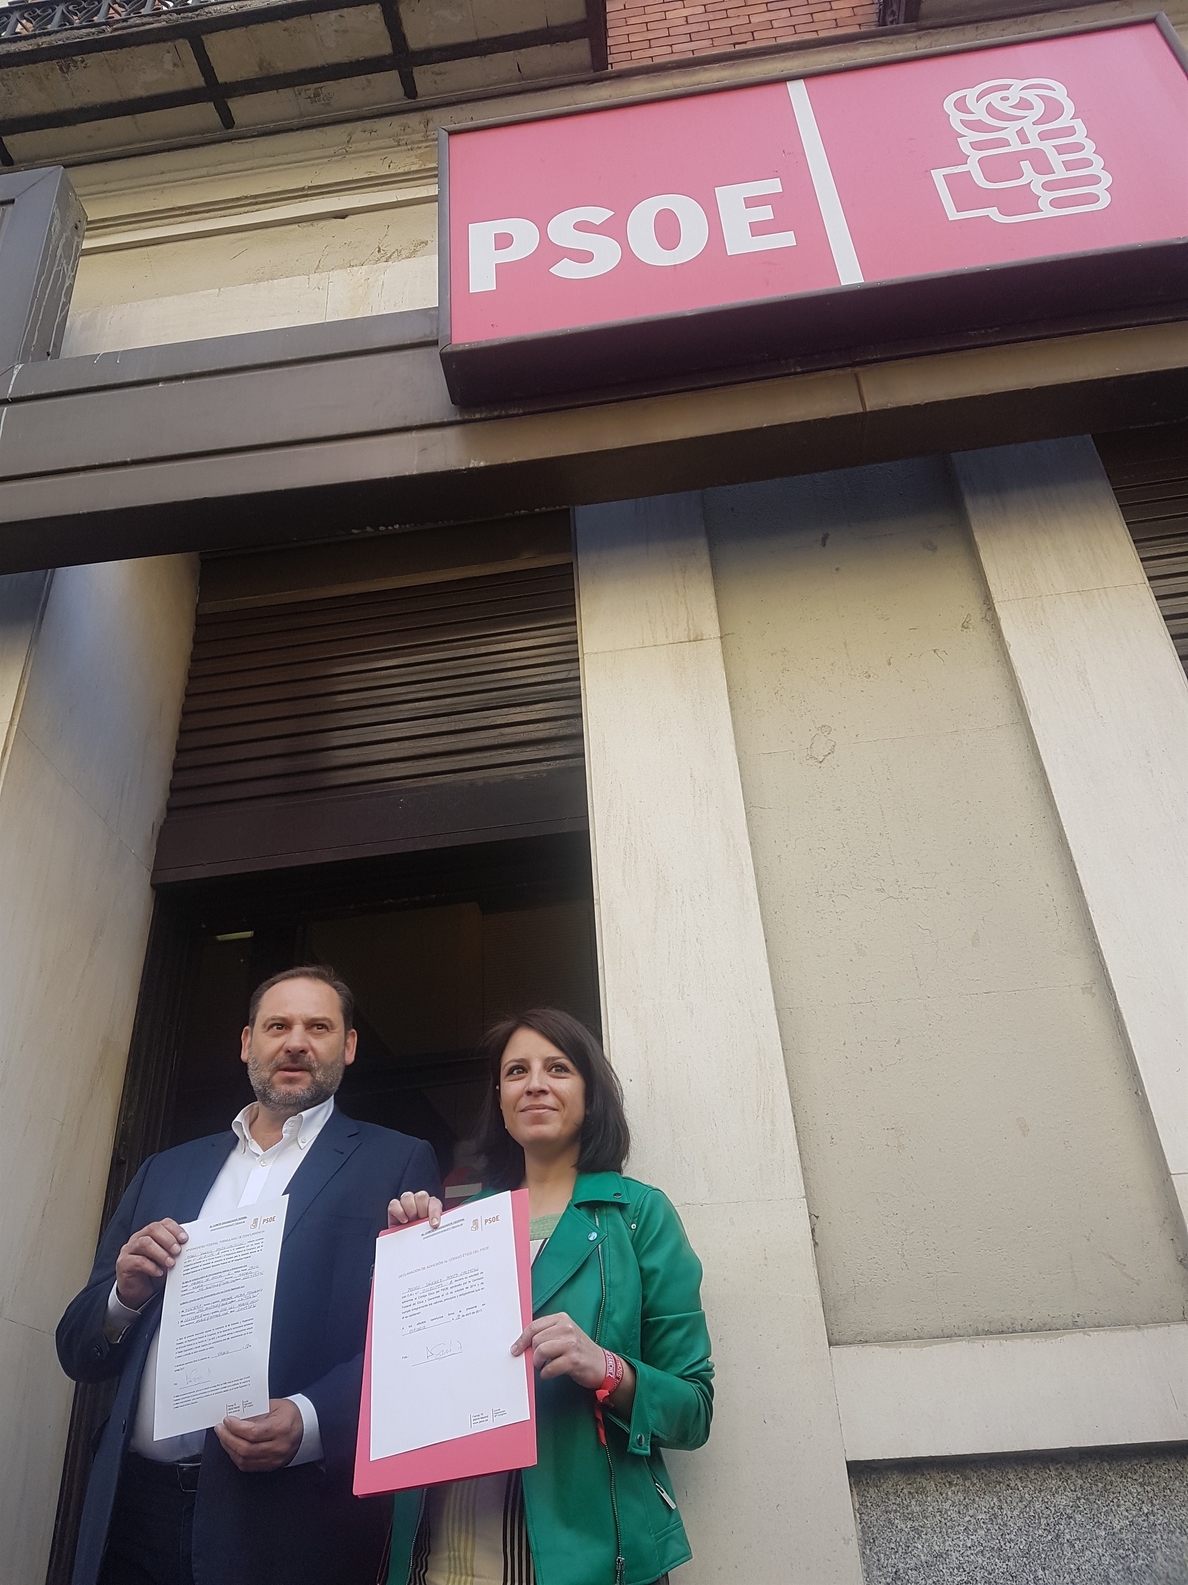 Ábalos descarta disputar el liderazgo del PSOE valenciano a Ximo Puig